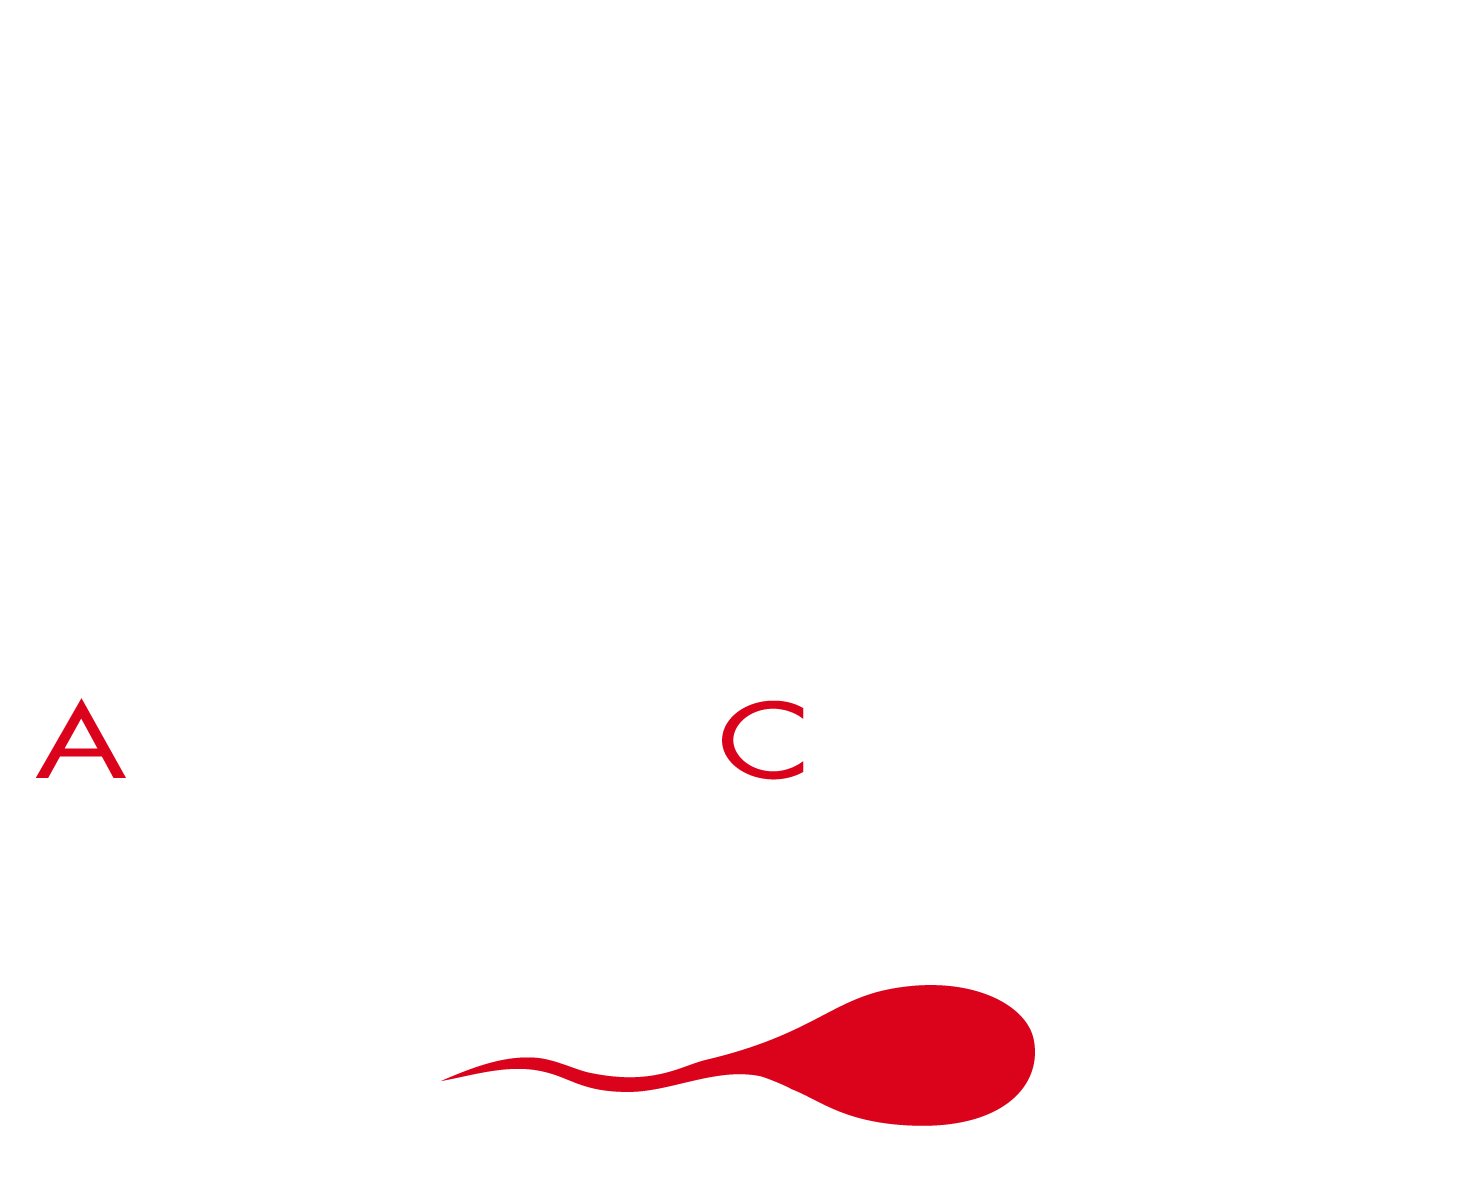 FRI Communication